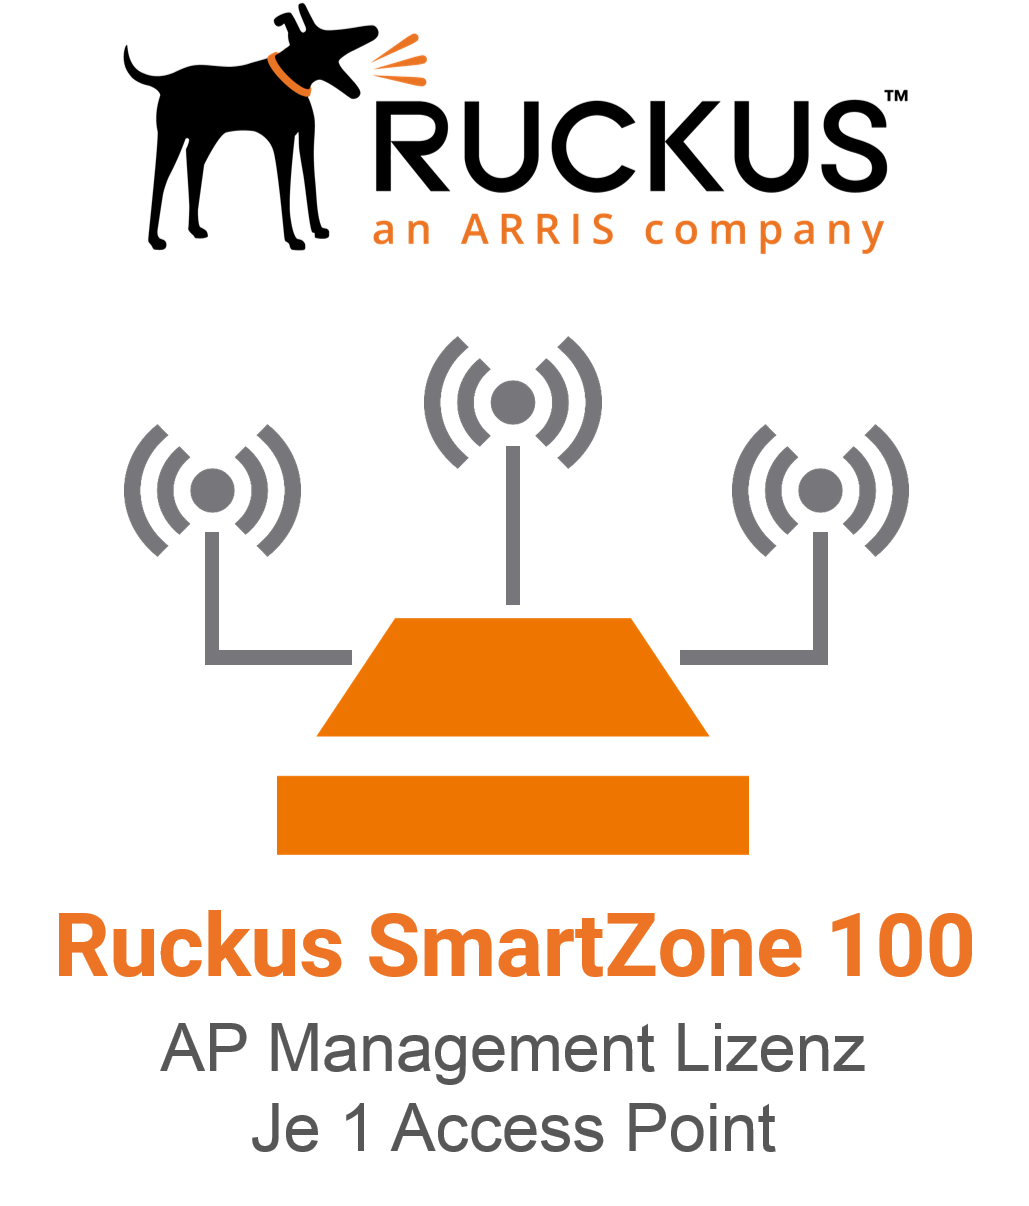 Ruckus Smartzone Access Point Management Lizenz